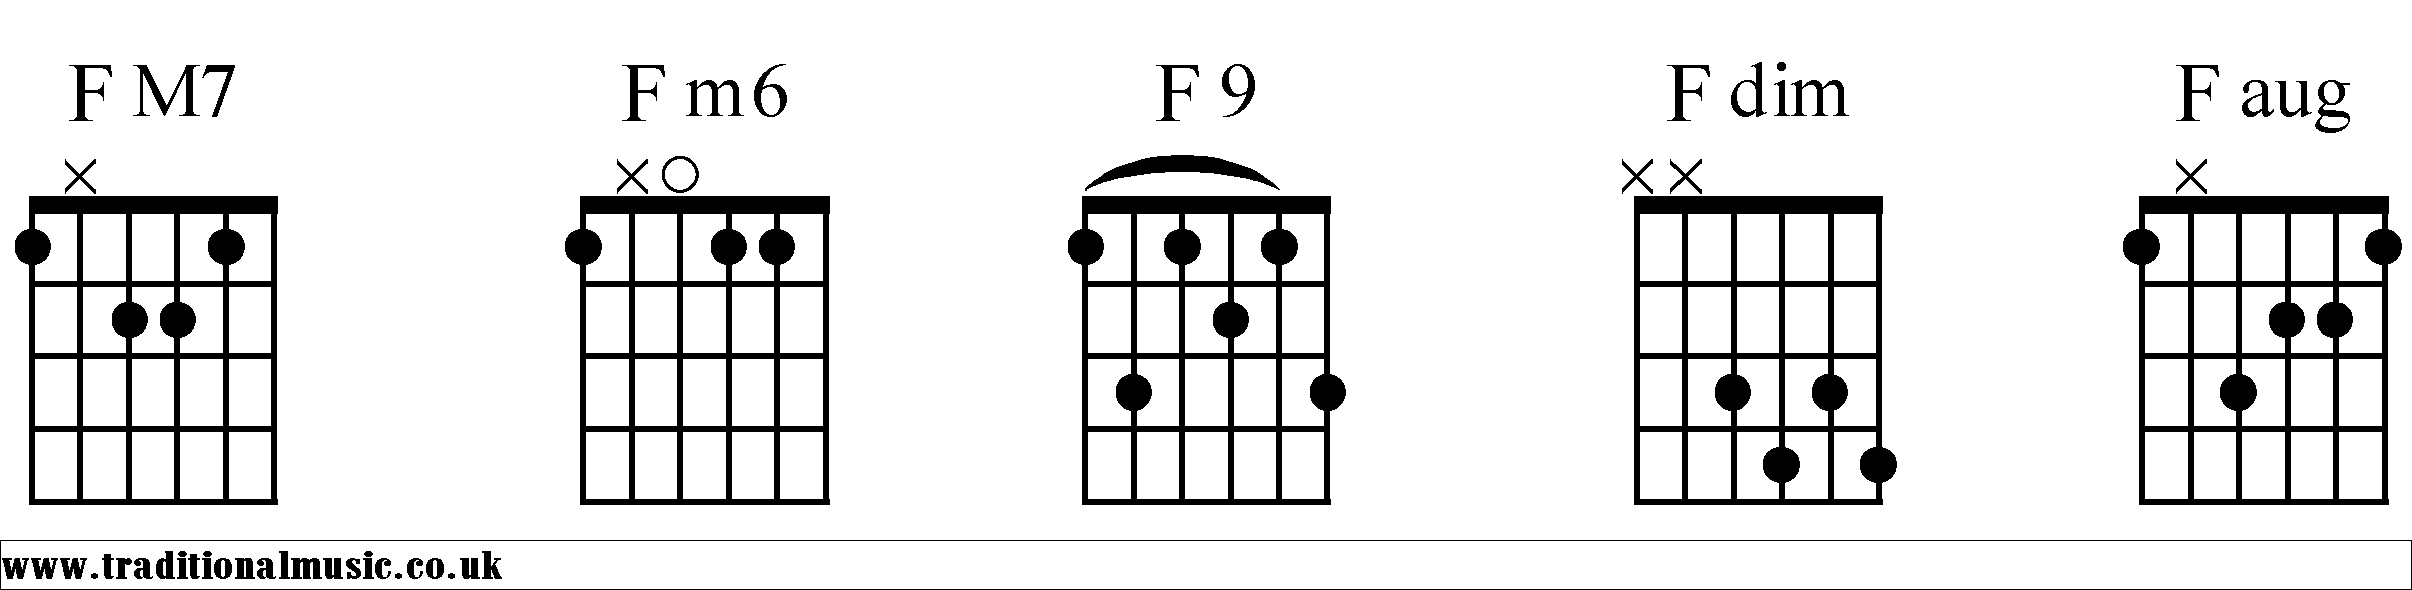 F Chords diagrams Guitar 2